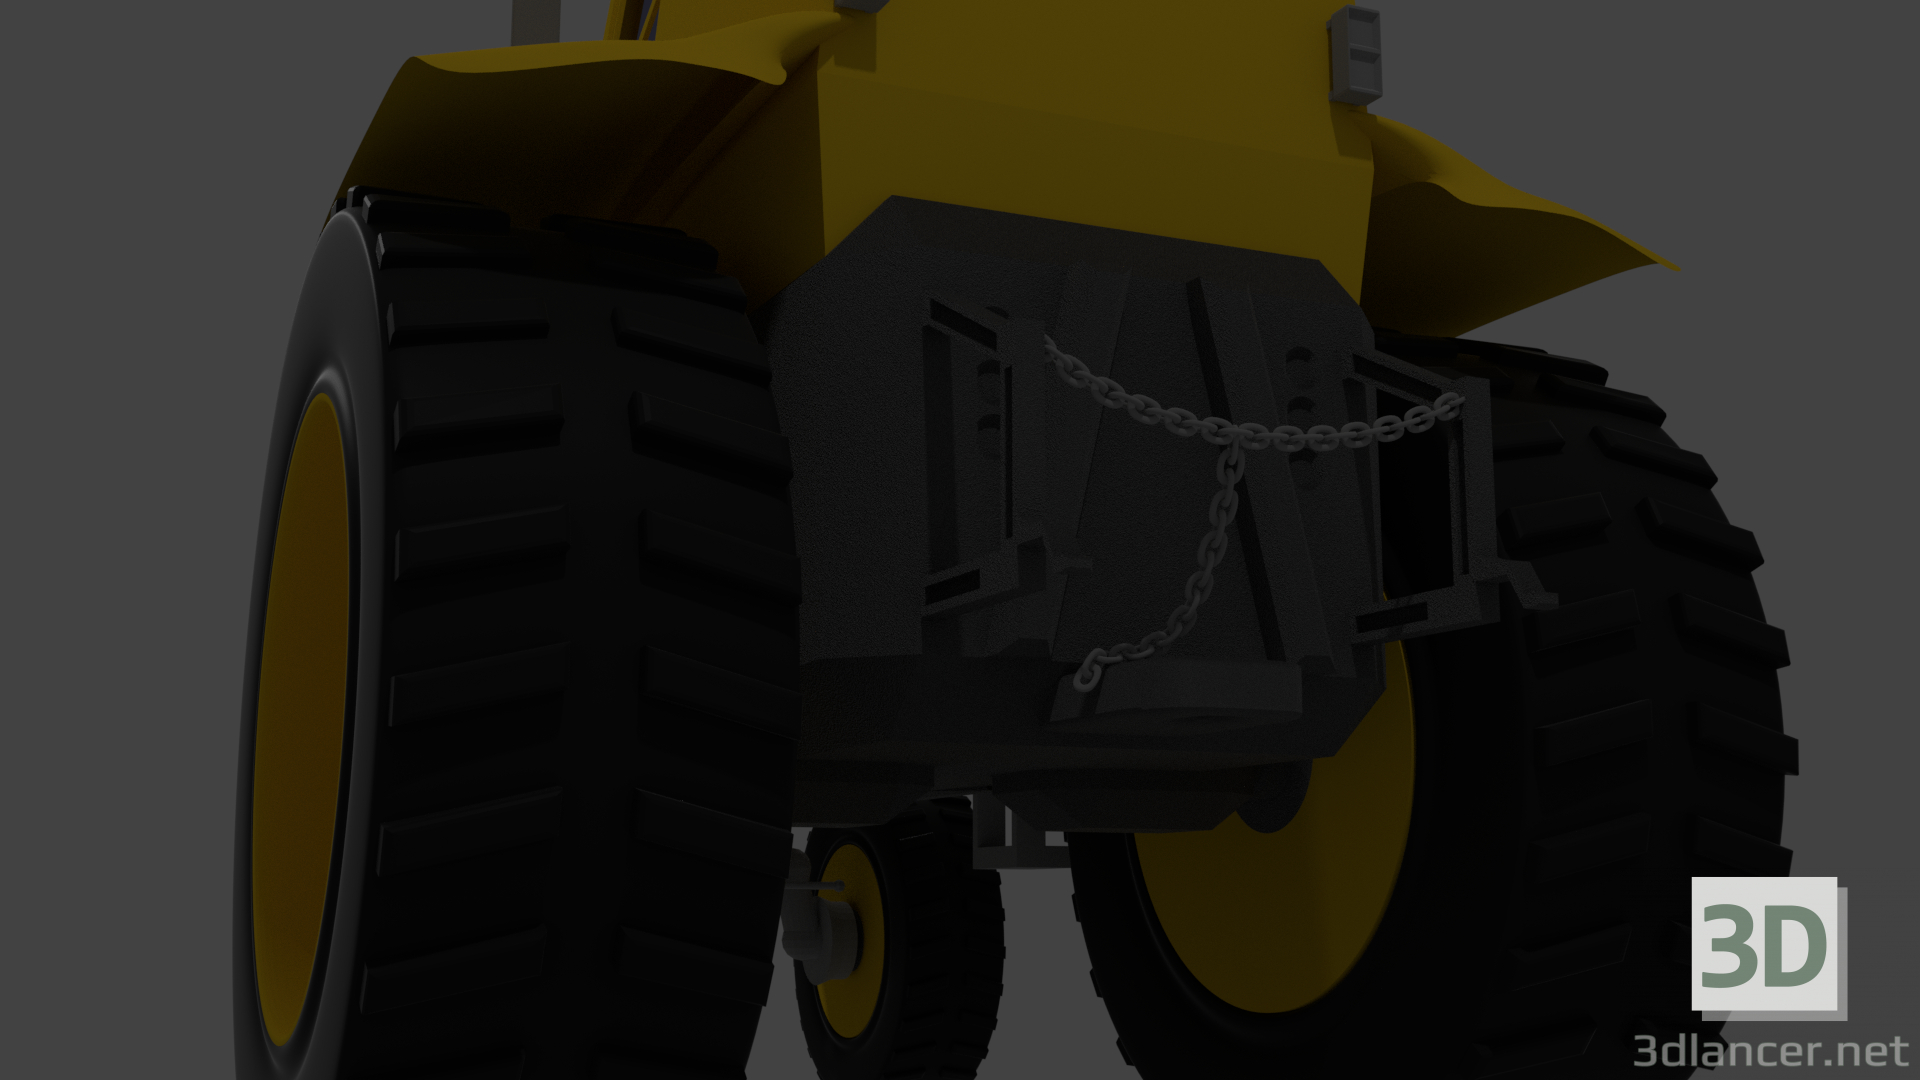 3D Modell Traktor - Vorschau